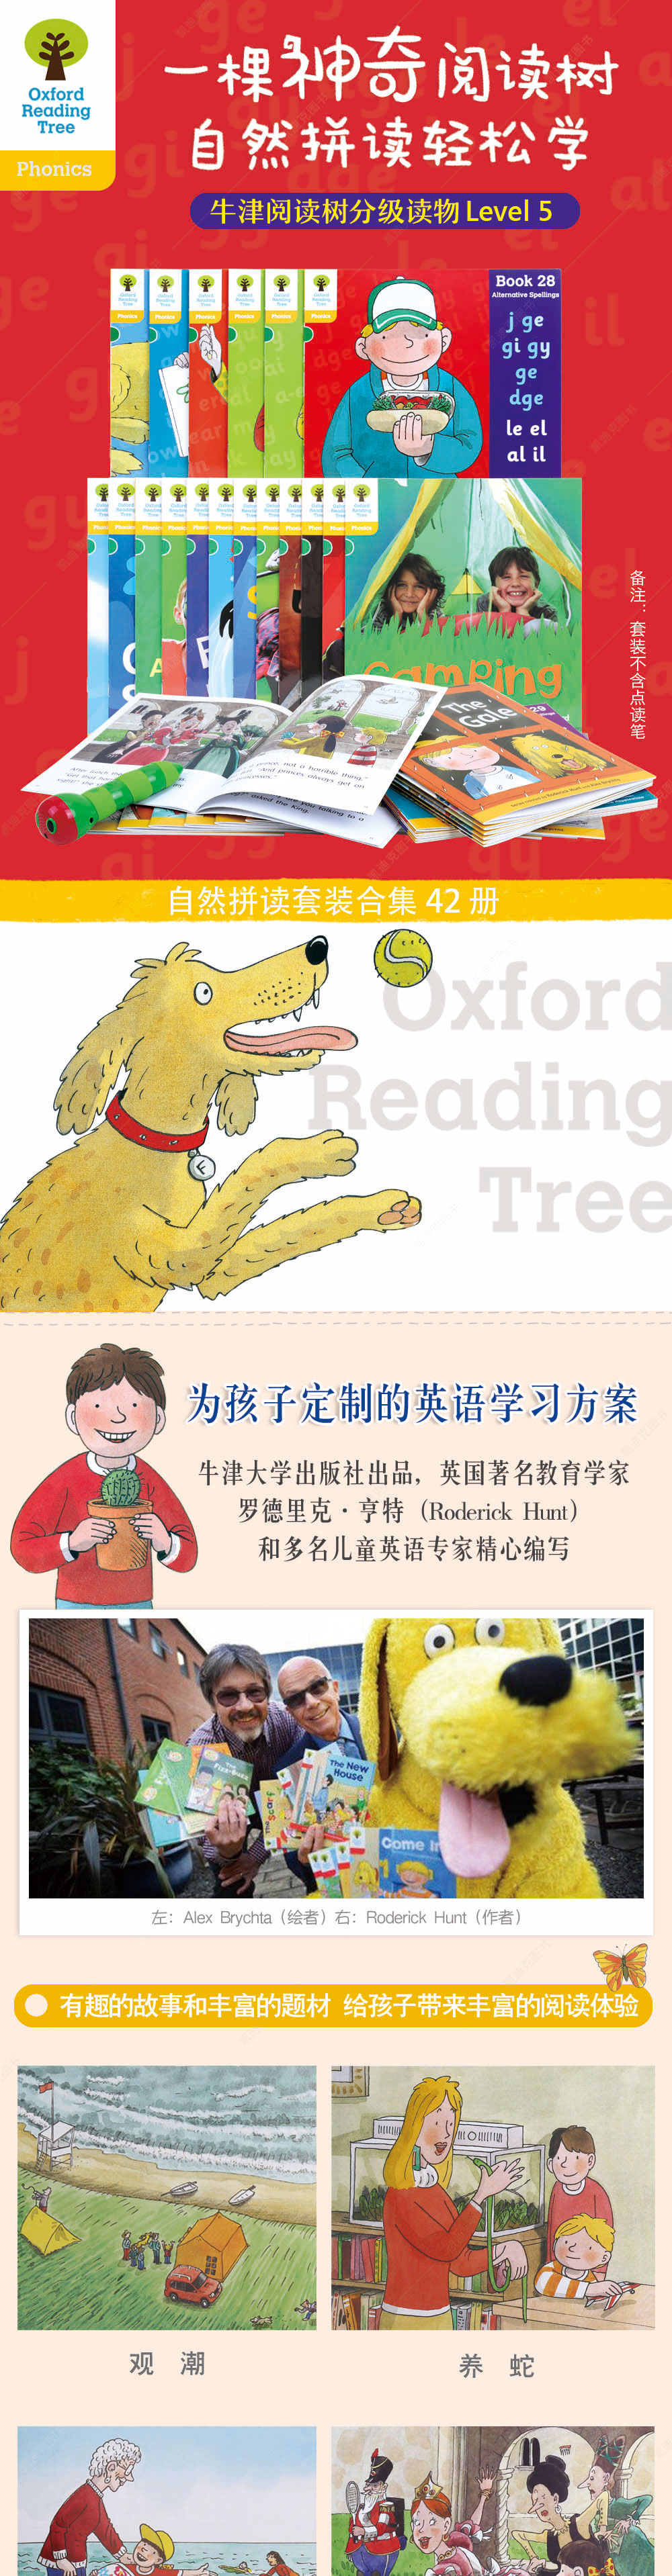 牛津阅读树 Level 5 自然拼读套装详情页01.jpg